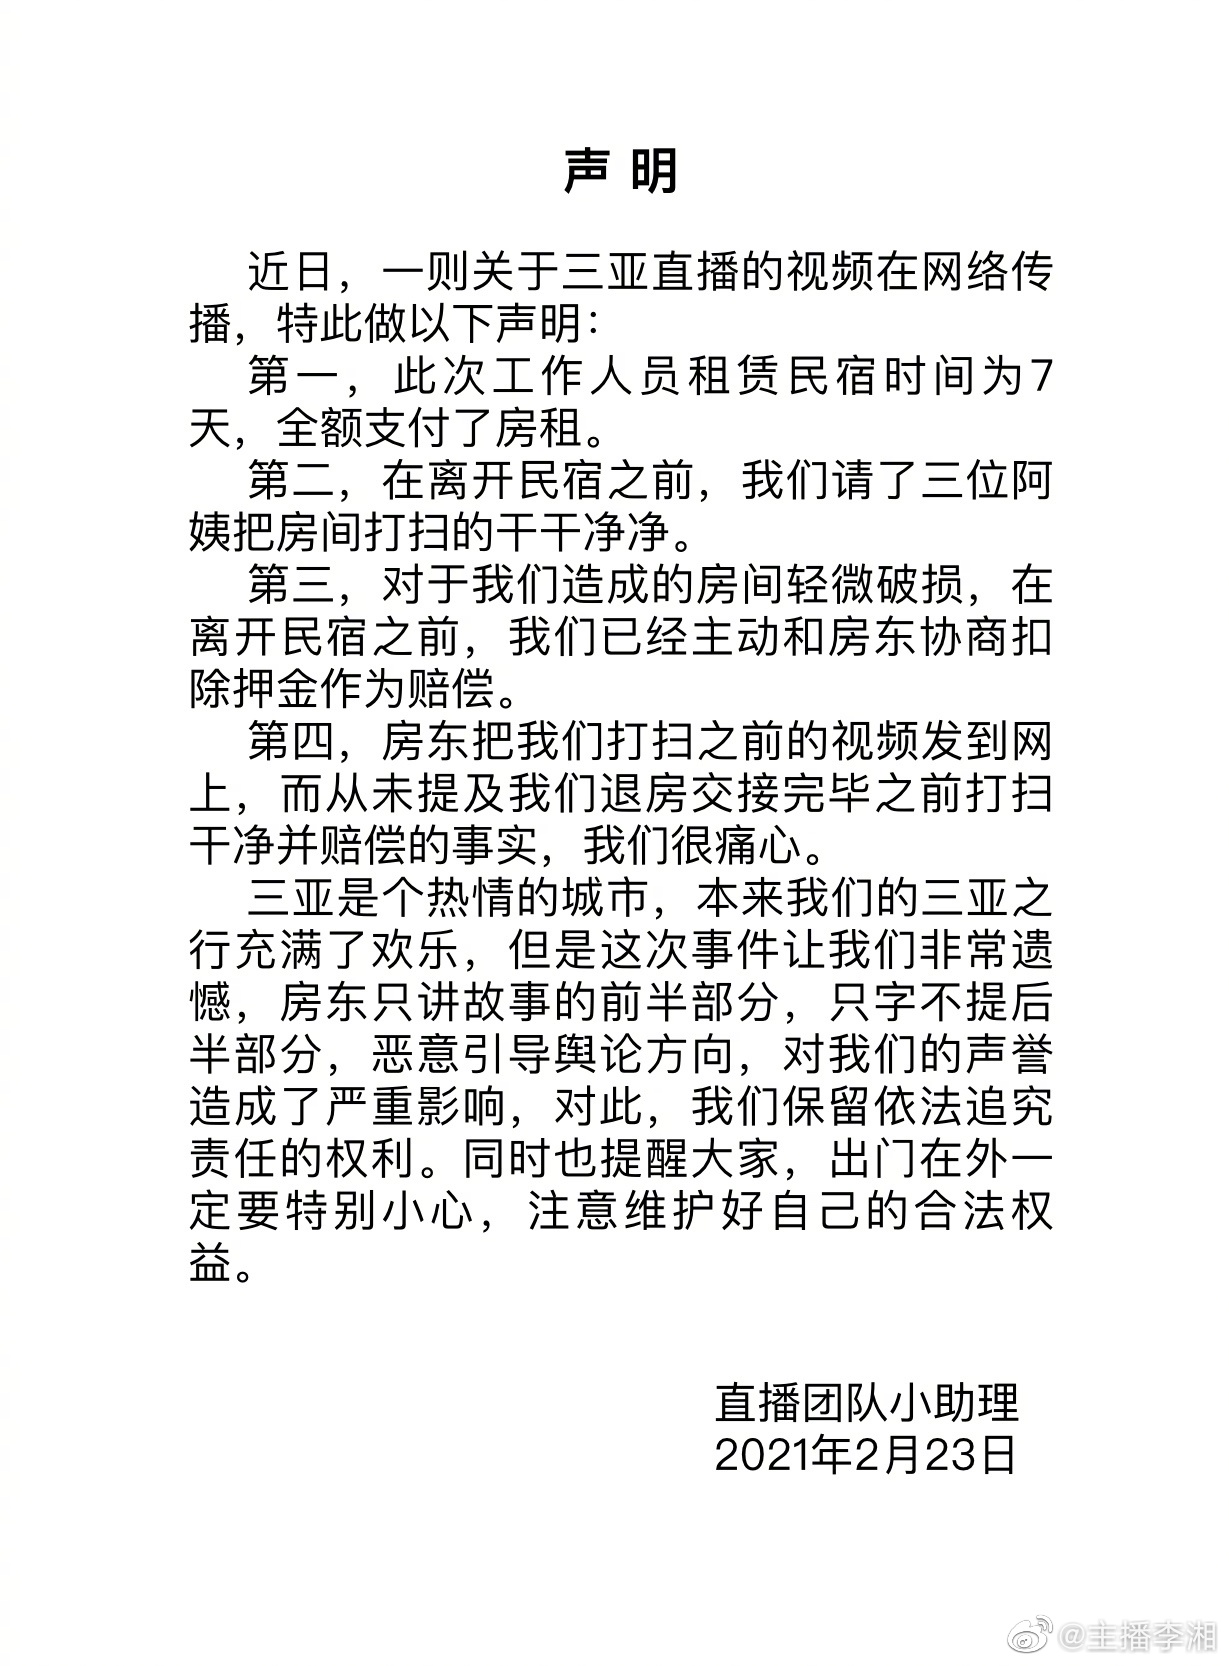 反转！李湘回应租房争议称离开前已打扫 房东恶意引导舆论